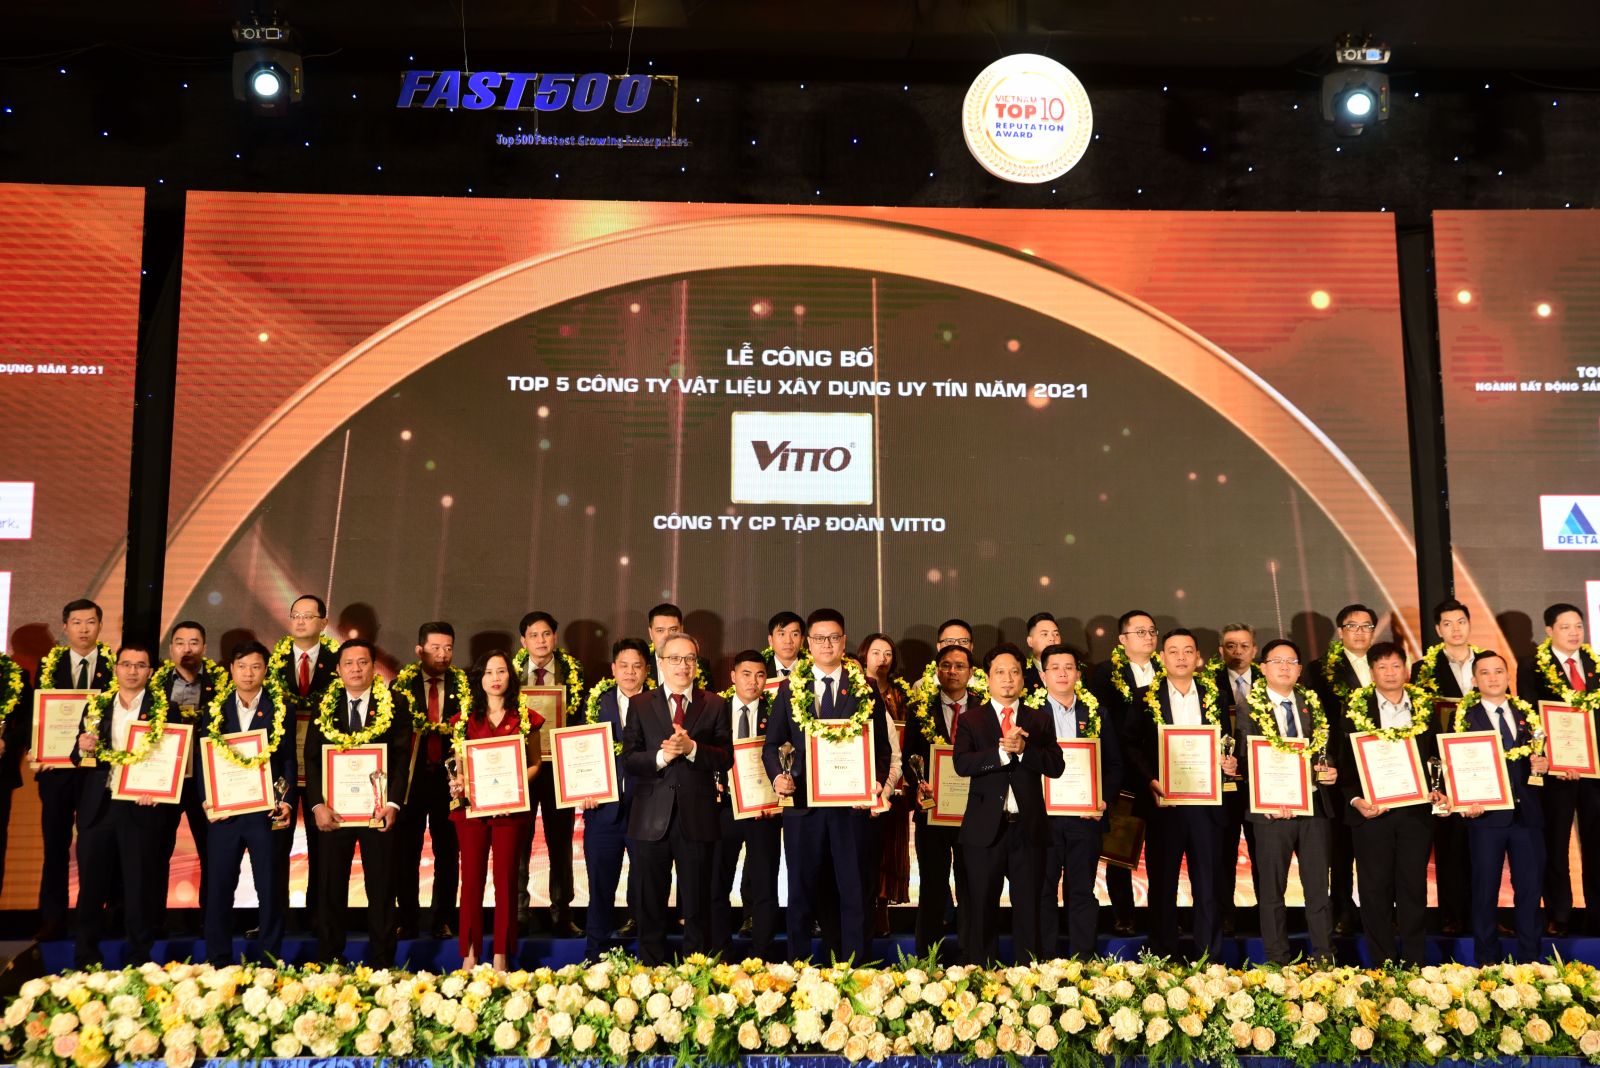 Công ty Cổ phần Tập đoàn Vitto vinh dự đón nhận danh hiệu:  Top 10 Công ty uy tín ngành Xây dựng – Vật liệu xây dựng năm 2021 